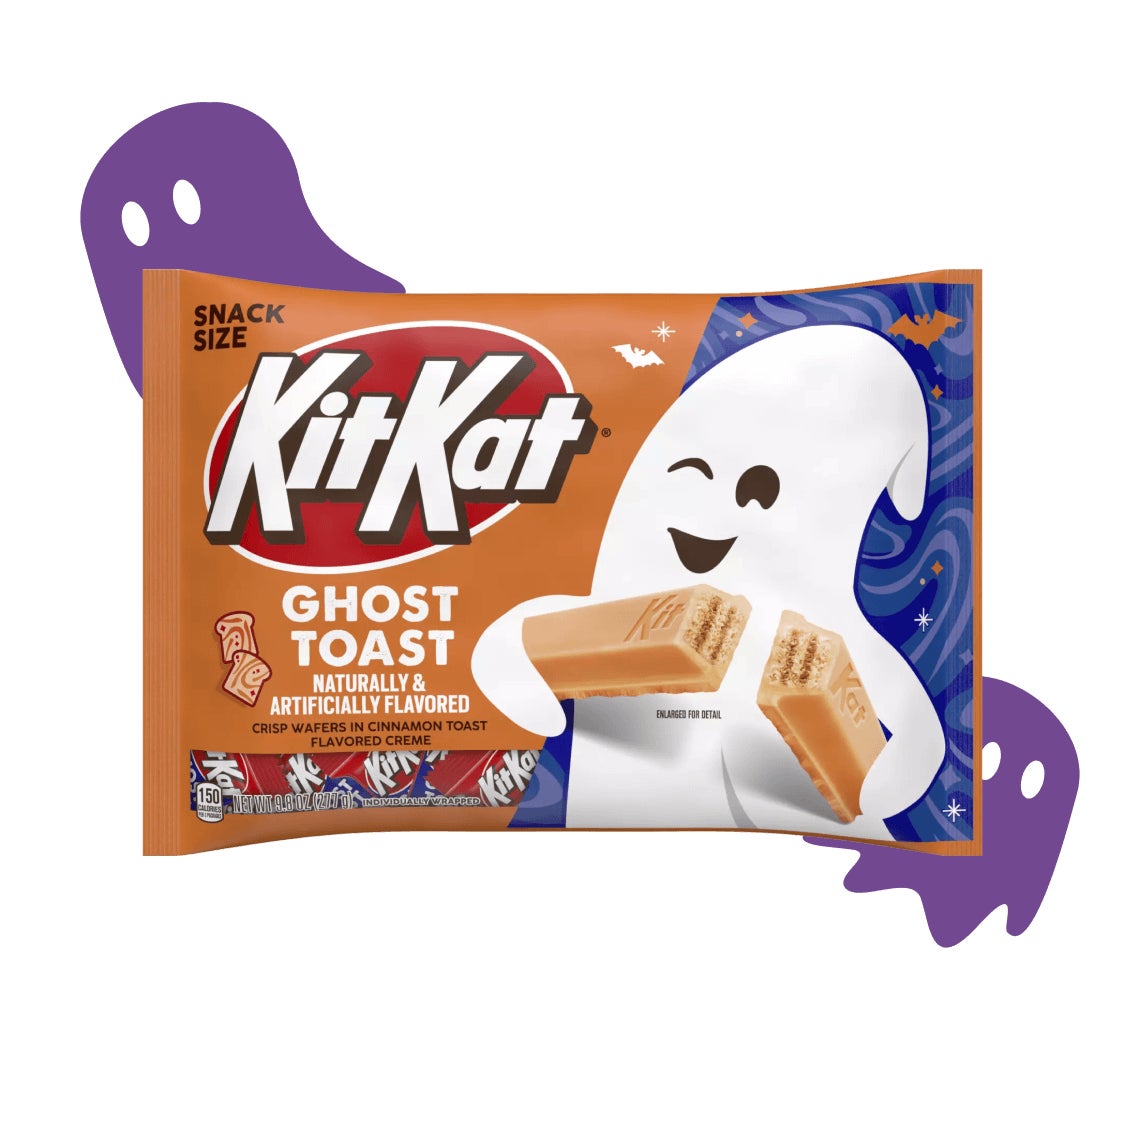 bag of ghost toast kit kat bars